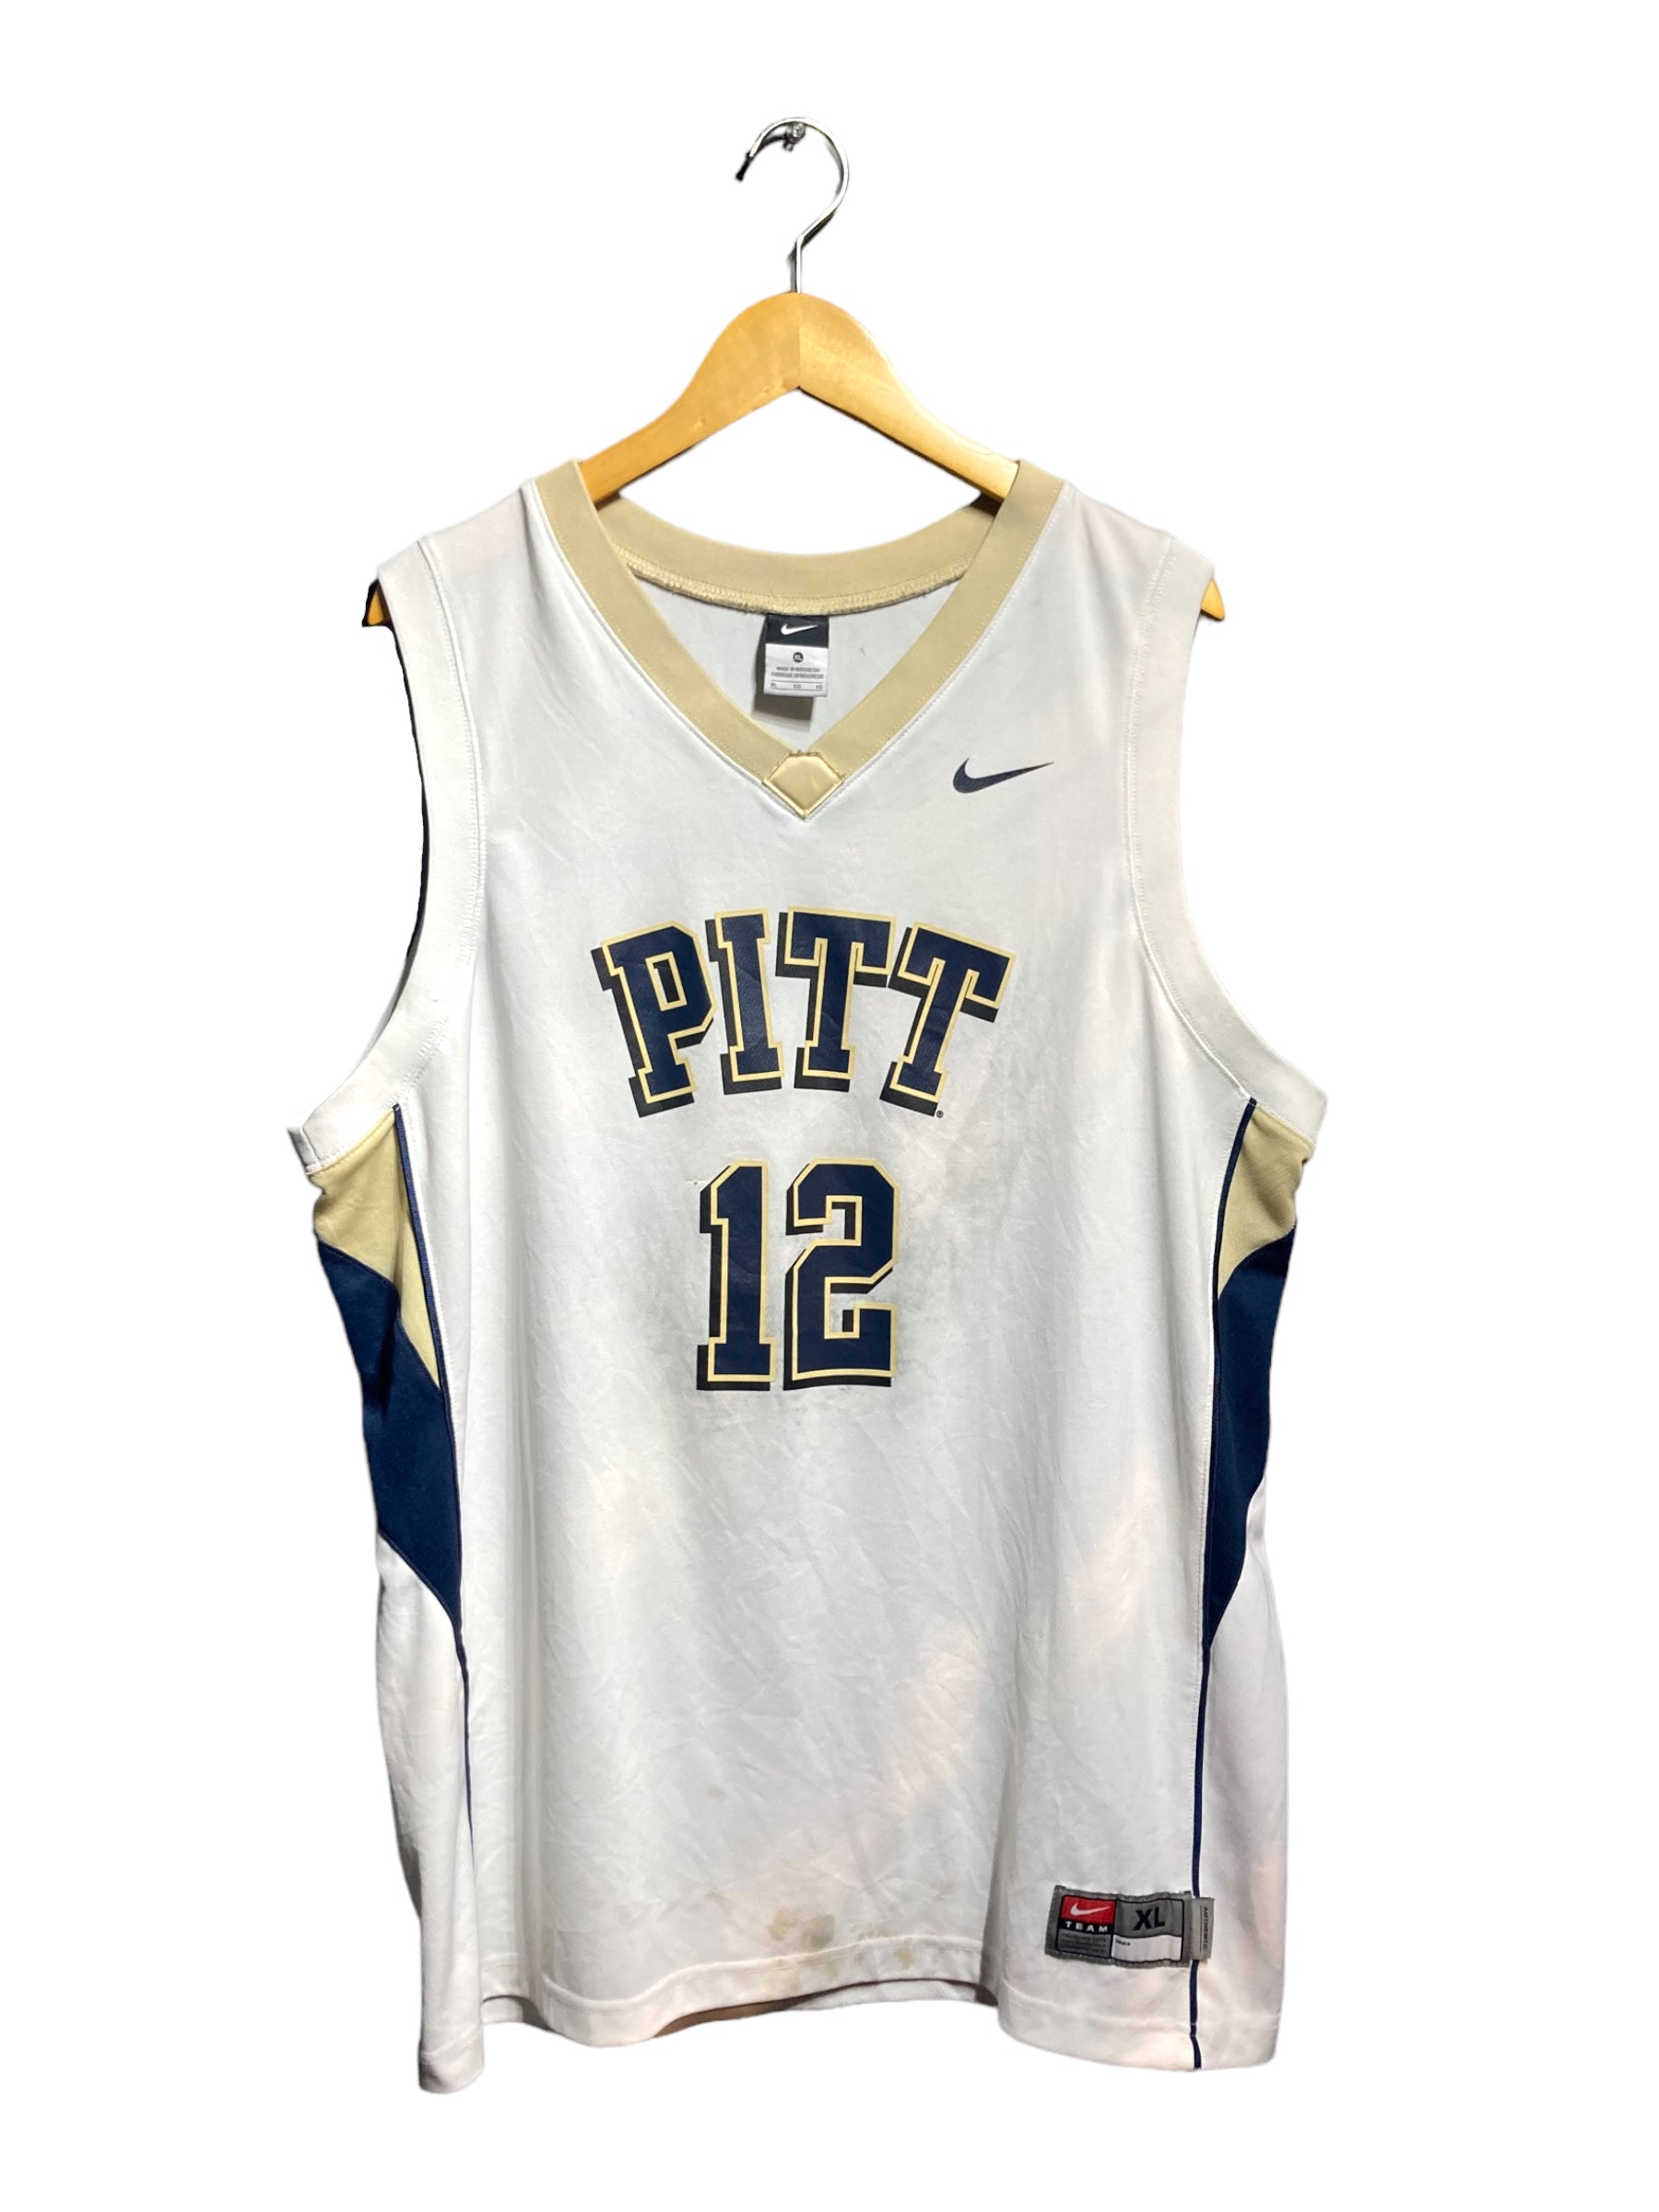 PITT ピッツバーグ大学 カレッジ NIKE ナイキ バスケ ゲームシャツ